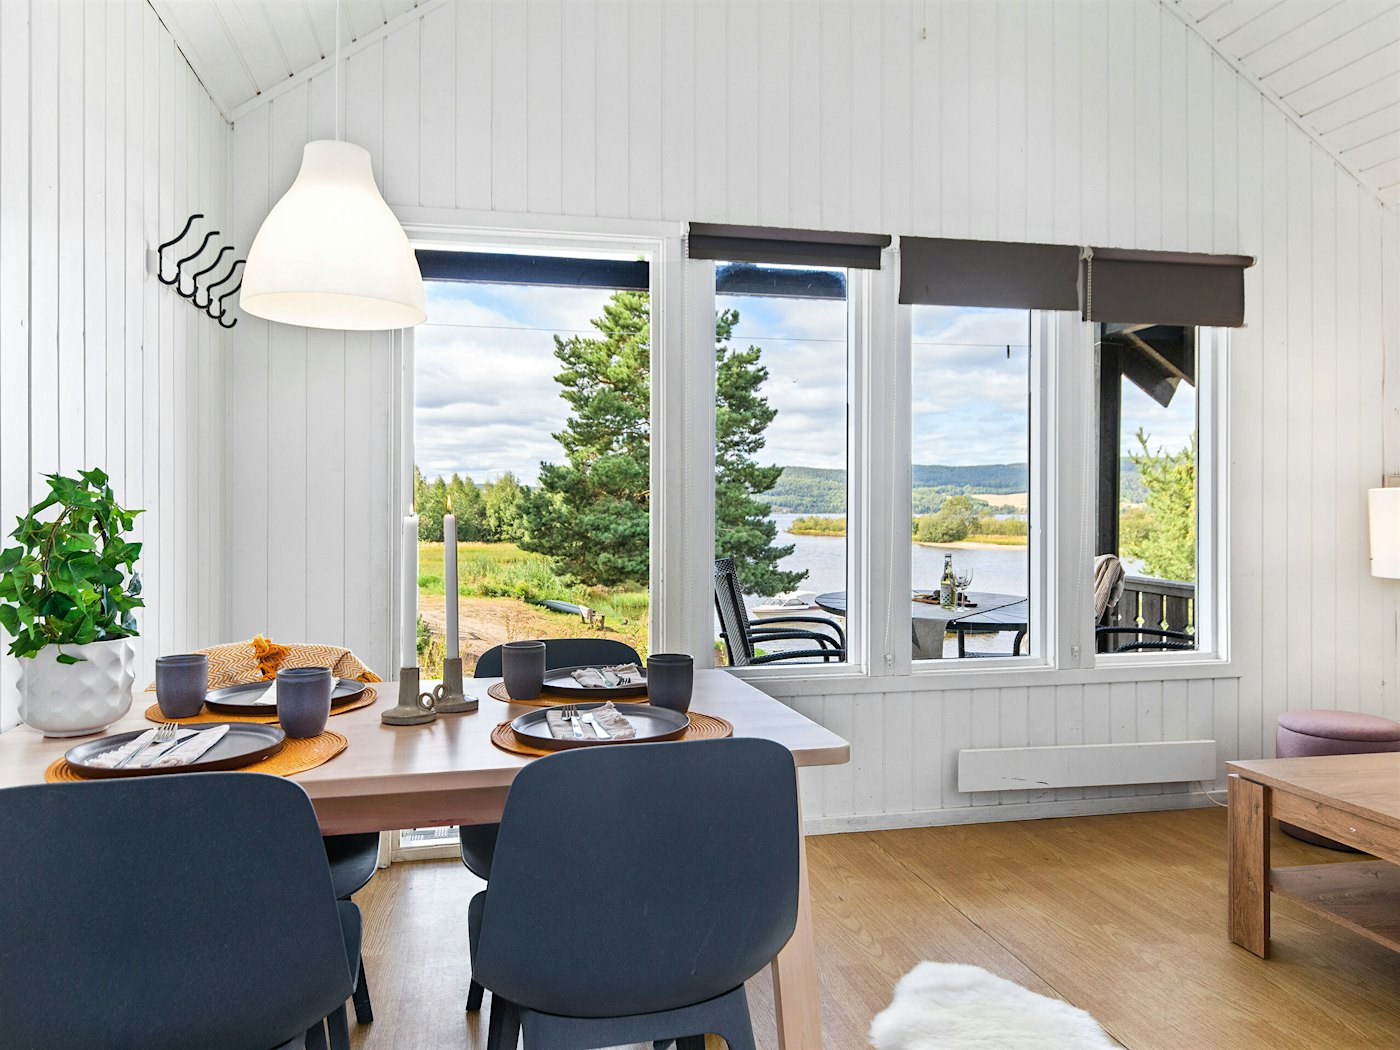 Lyst rom med store vinduer, utsikt mot vannet. Spisebord er dekket til måltid. Foto